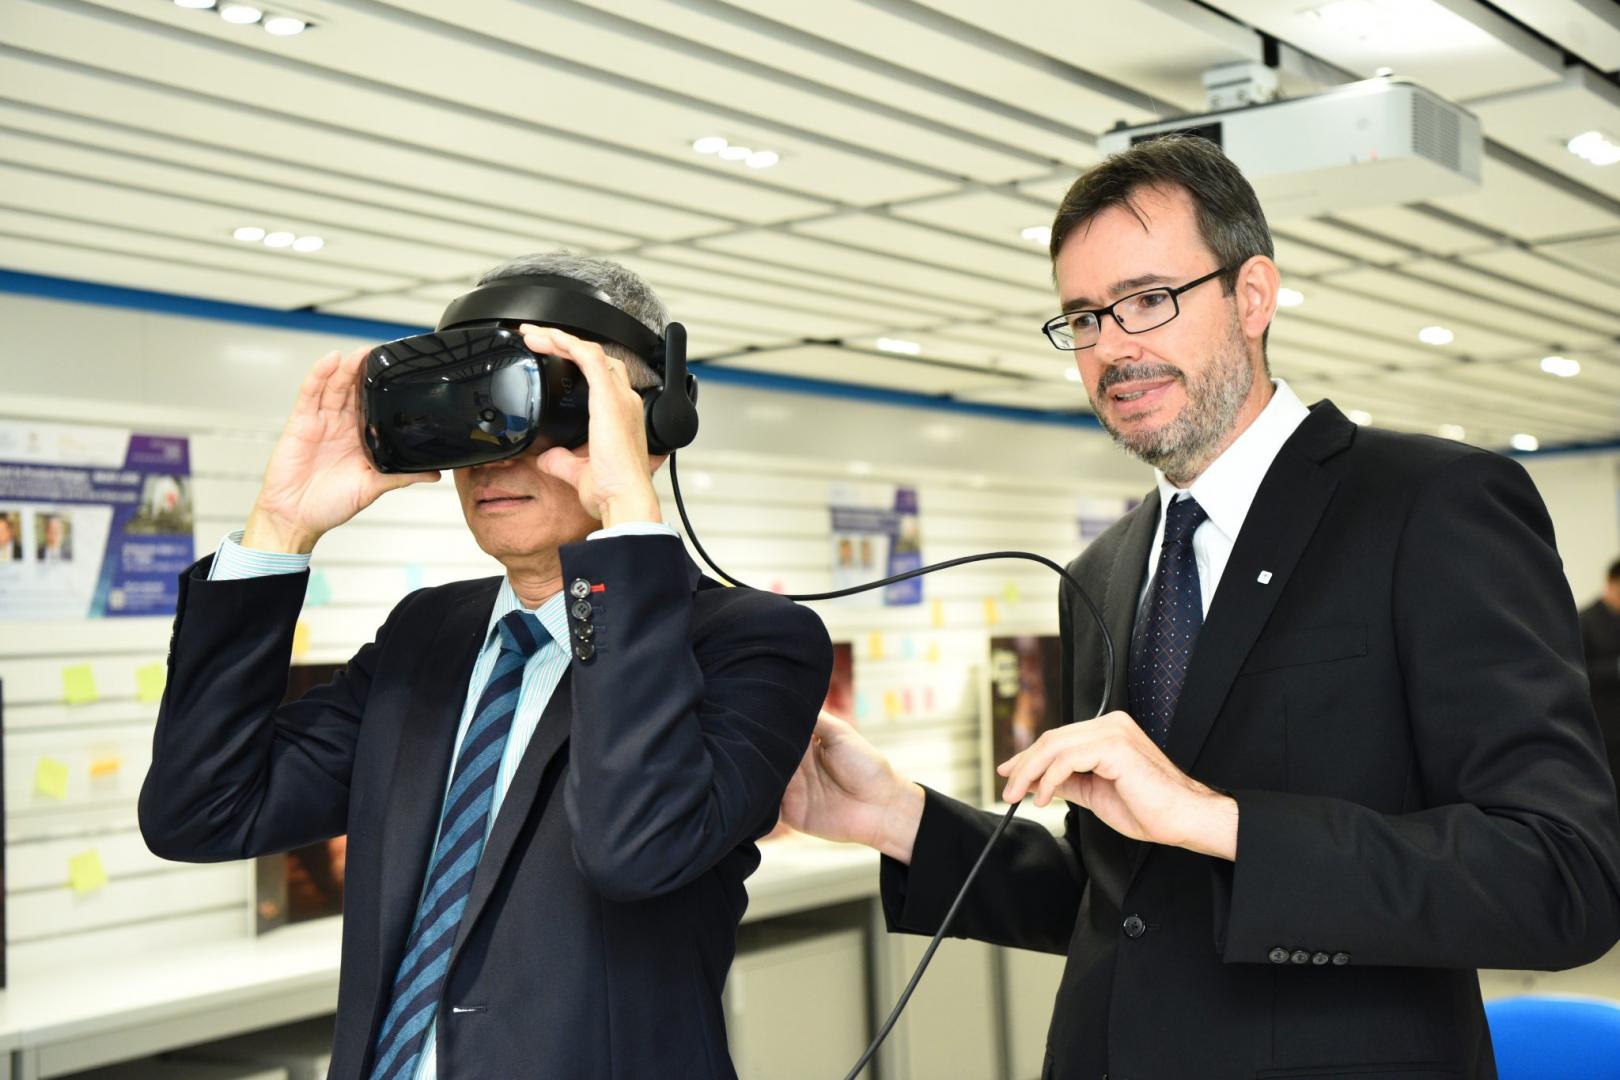  史维教授于展览上试戴ICRC用以训练员工而设的虚拟现实装置。